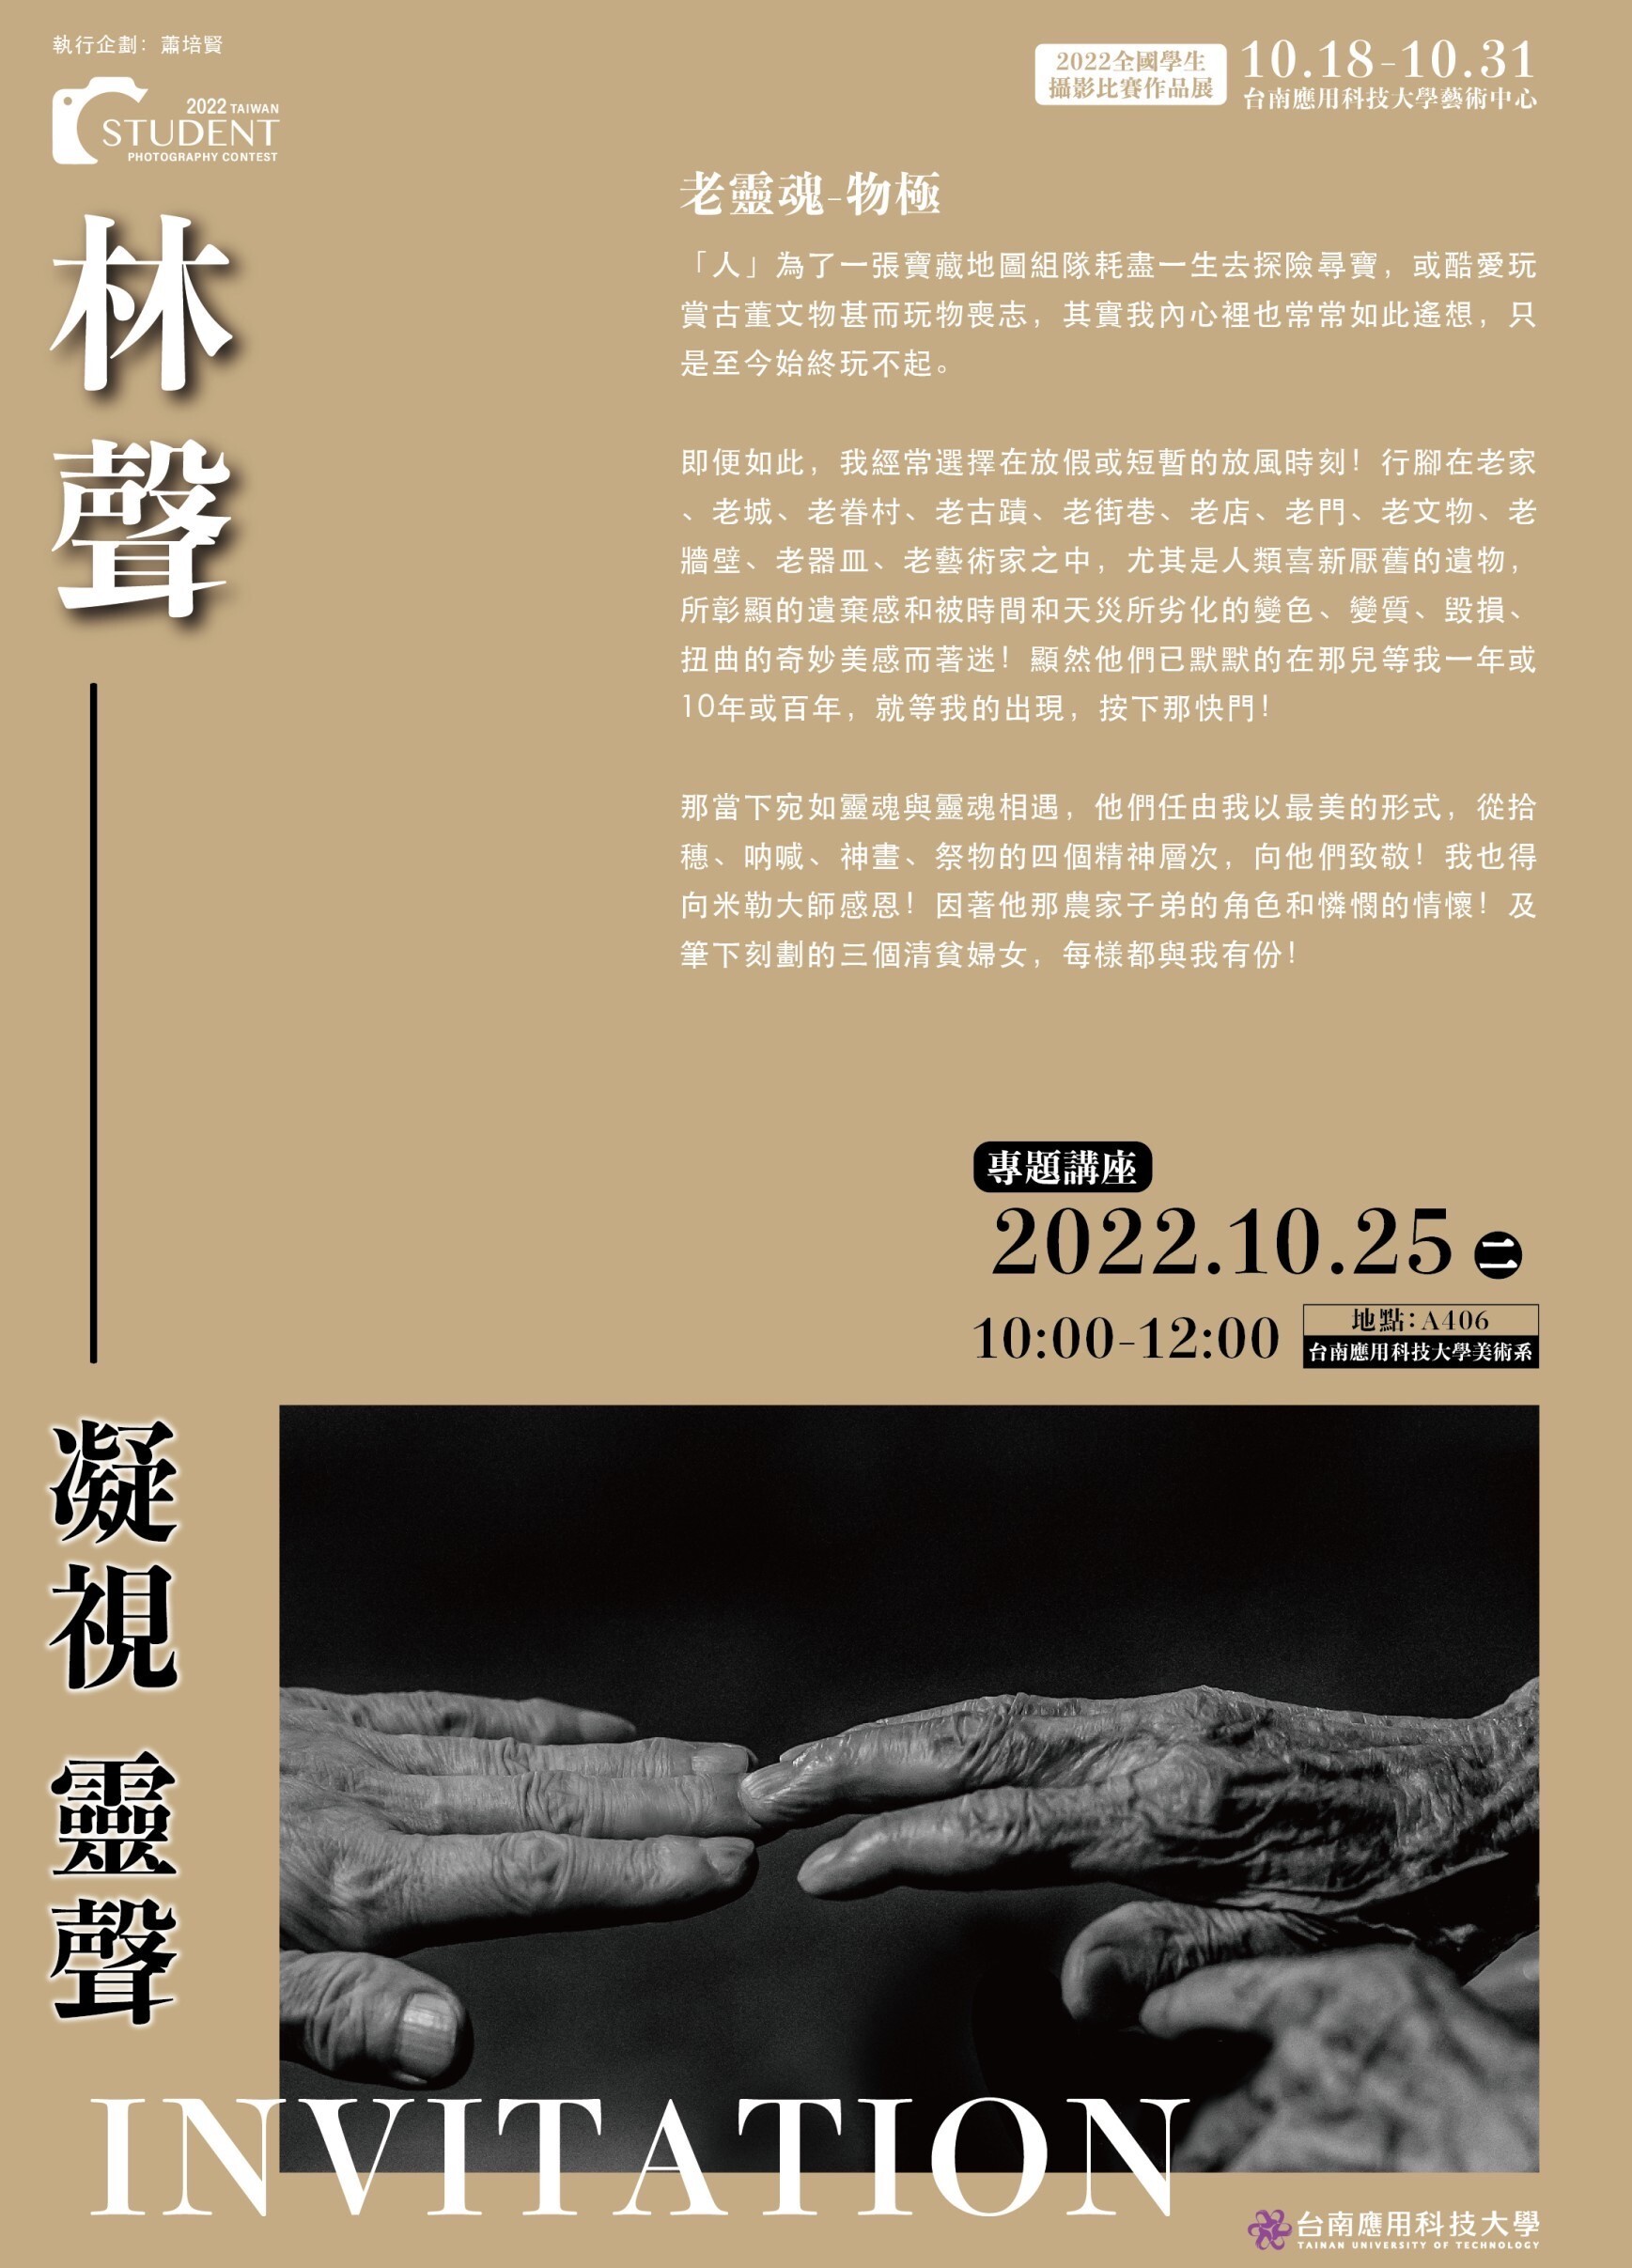 2022.(原訂10.25改期至11.08)南應大美術系主辦攝影家林聲專題講座